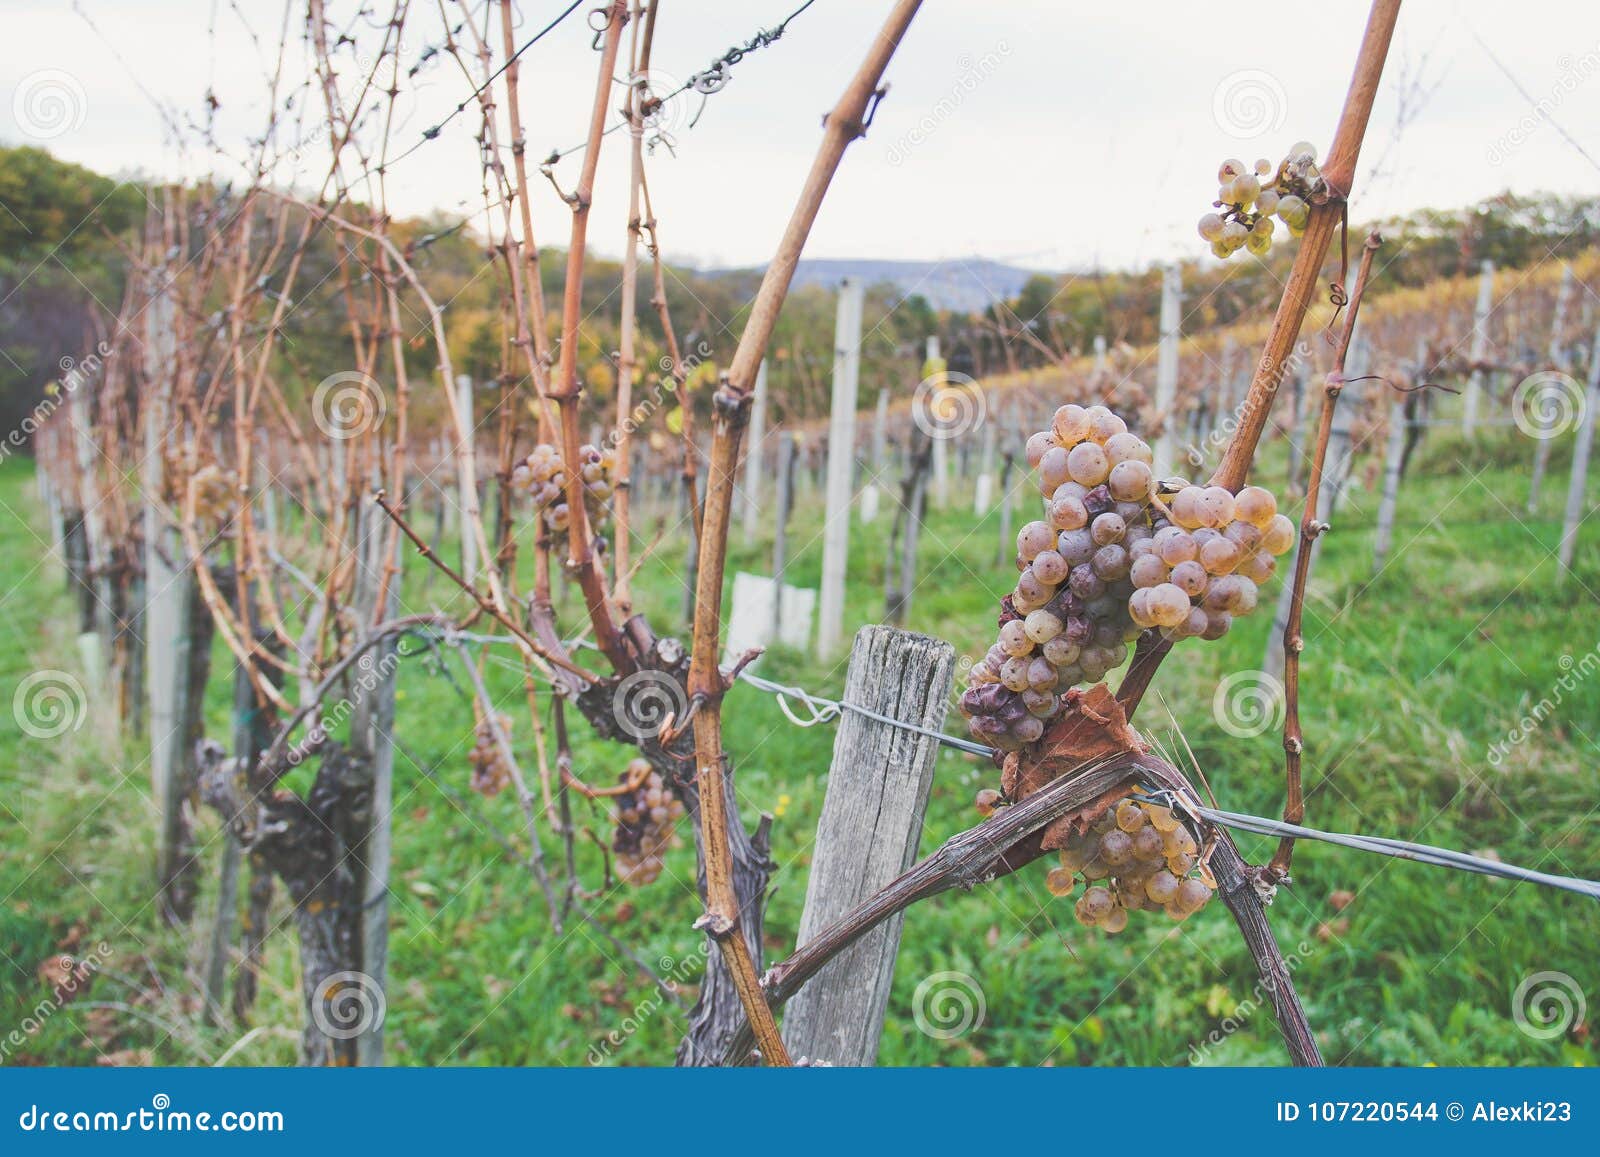 Vingårddruvor. Druvor i en vingård nära Kloech, Österrike